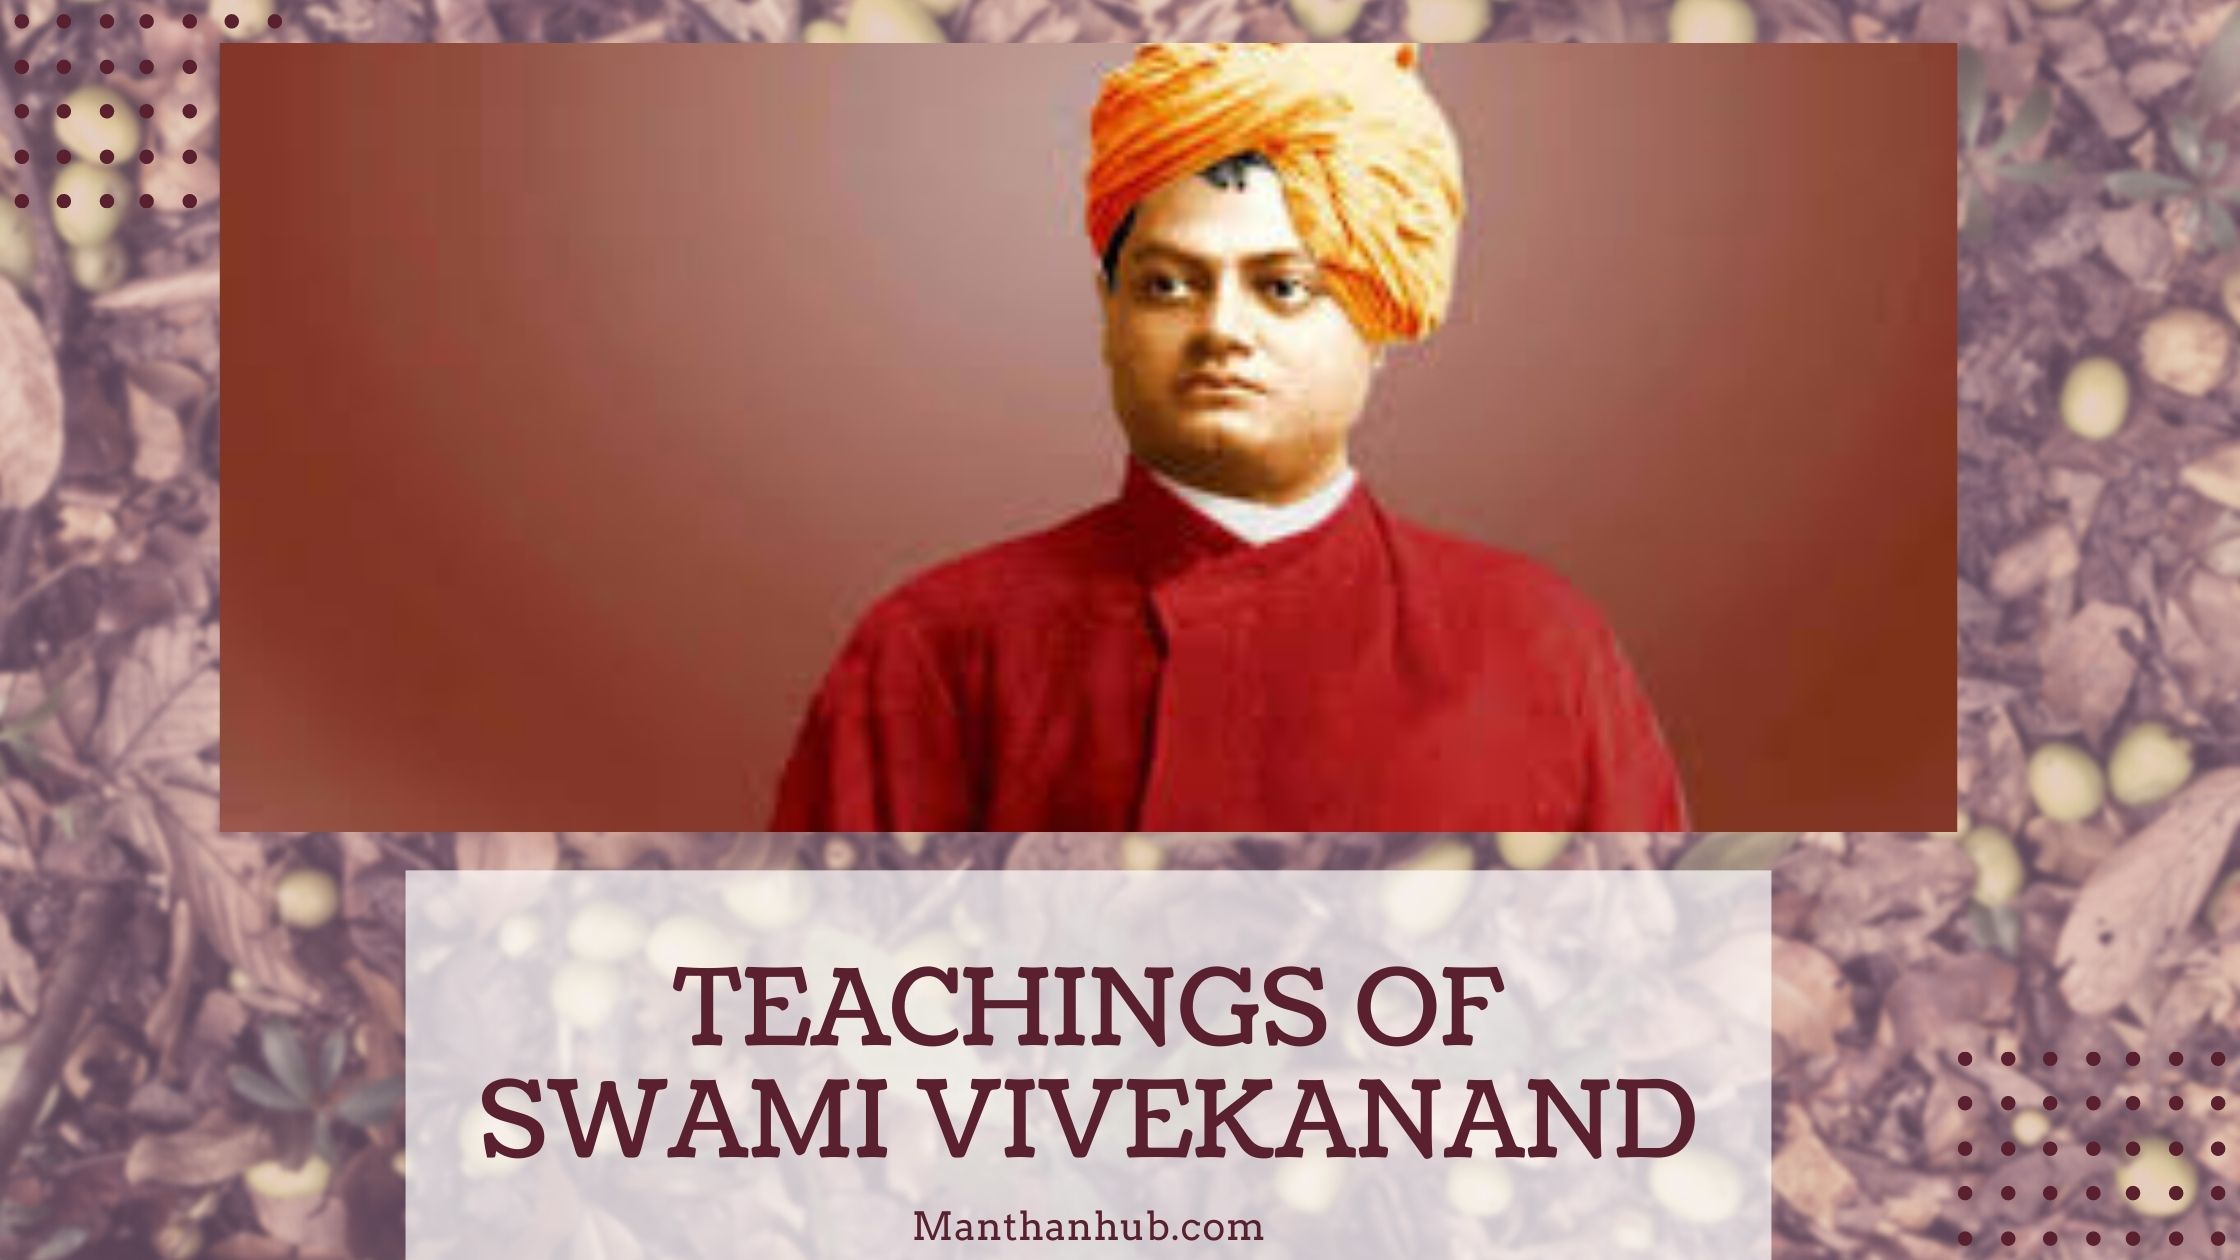 Swami vivekanand